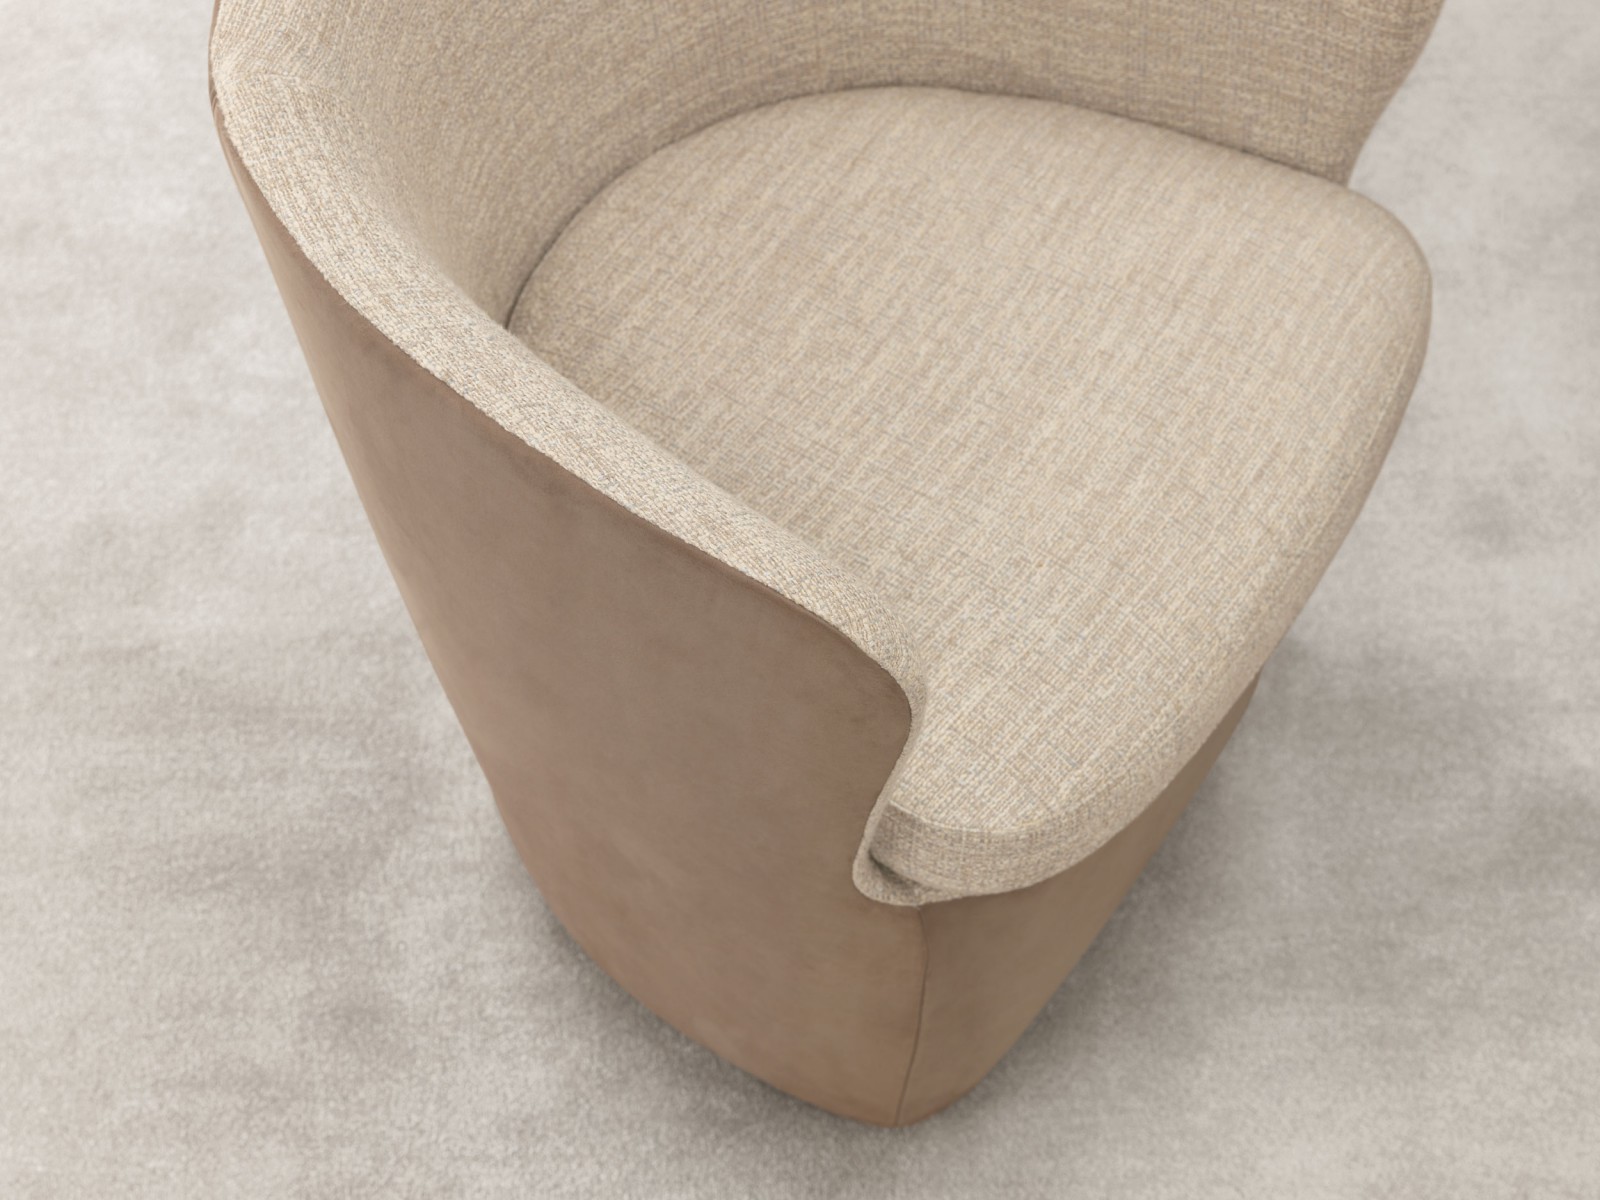 06-surface-armchairs-design-misuraemme